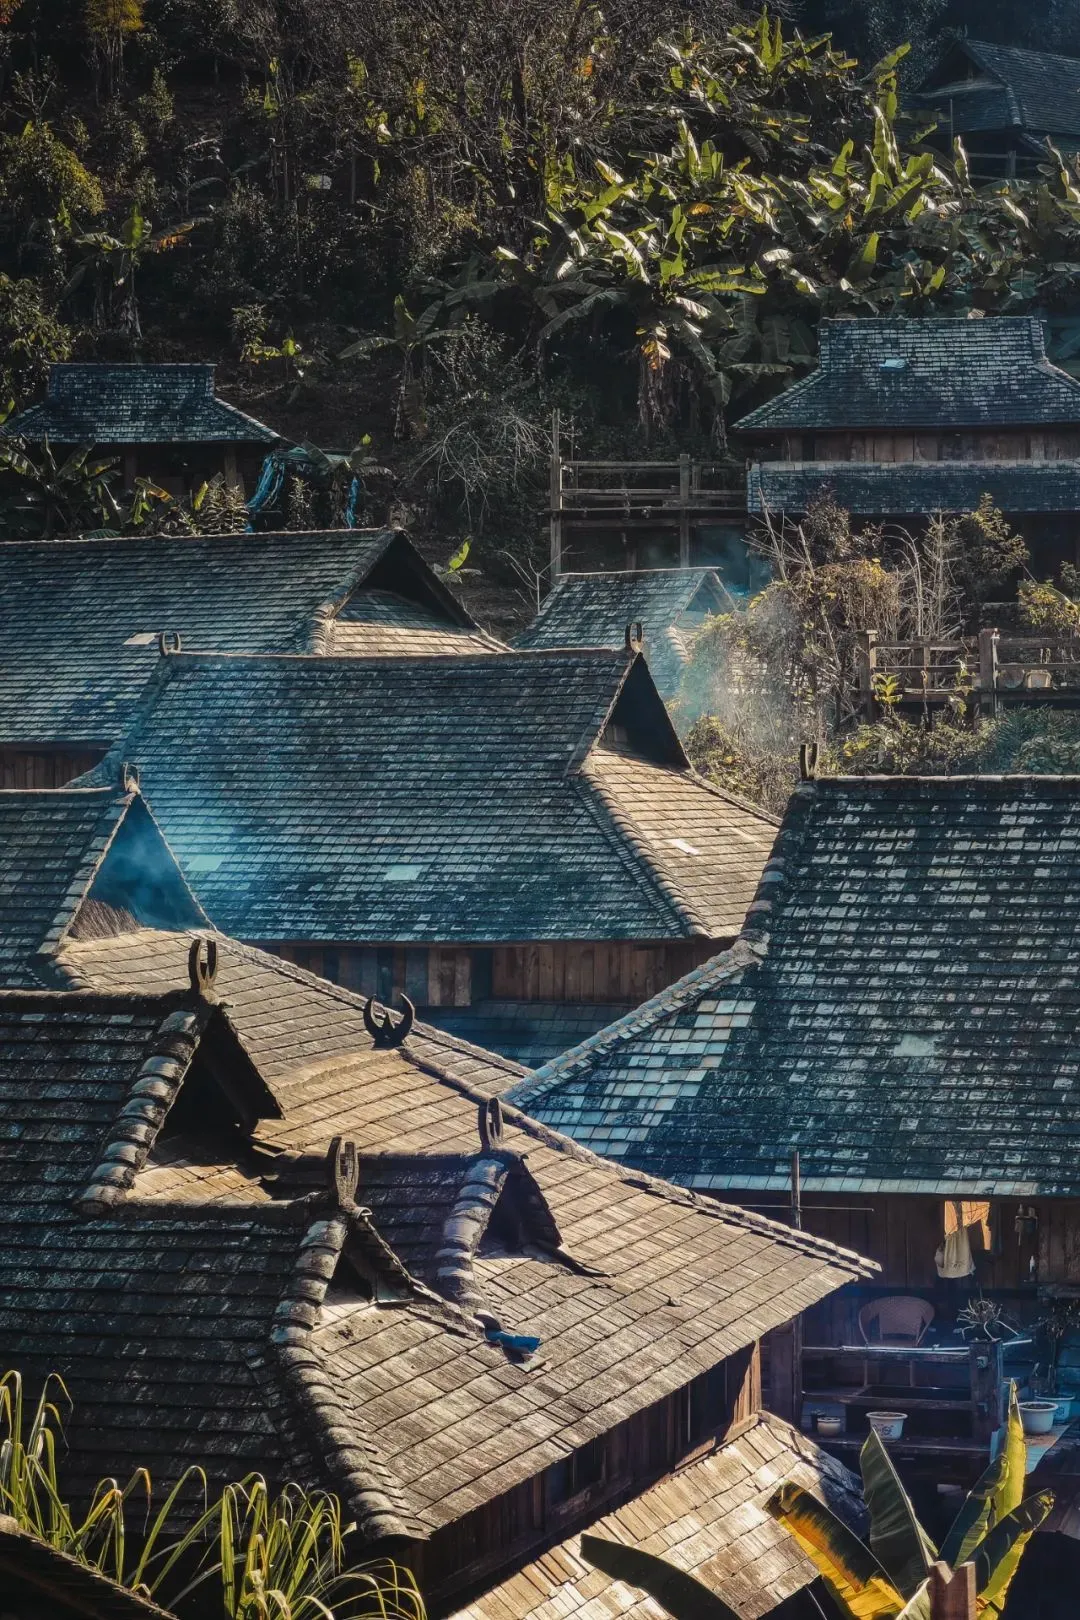 景迈山傣族古寨建筑风格独具民族特色 摄影/社长的旅行日常